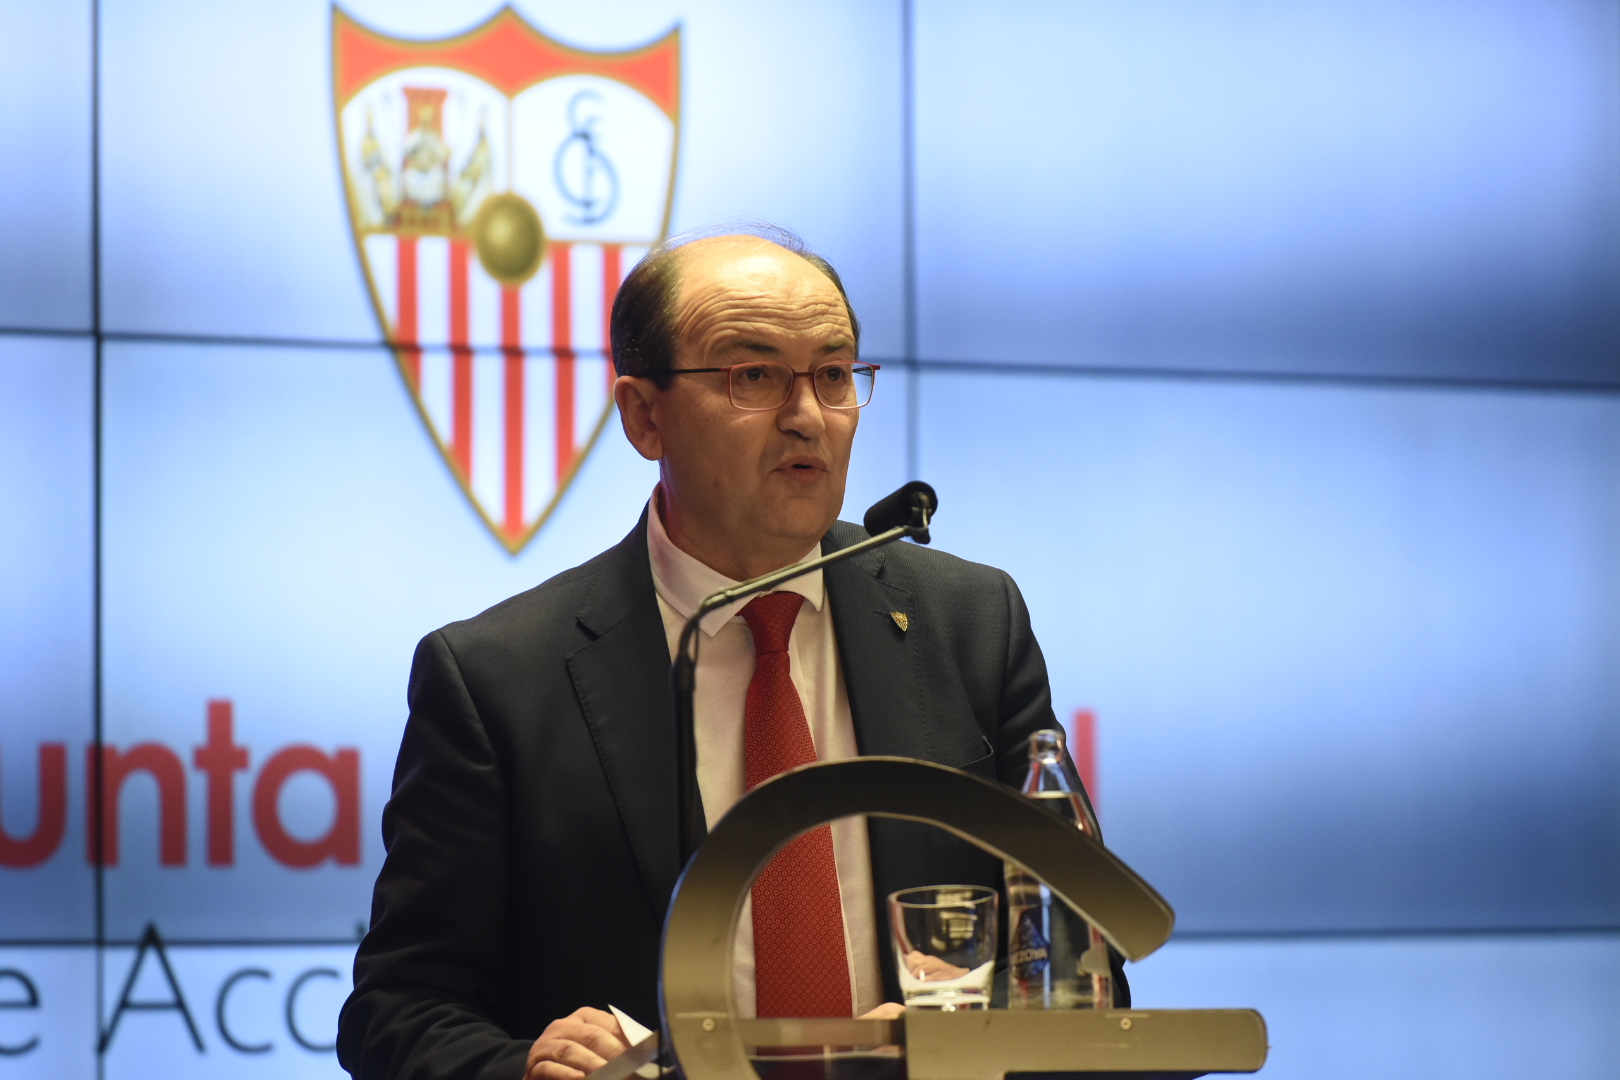 El presidente del Sevilla FC, José Castro, en la Junta General de Accionistas